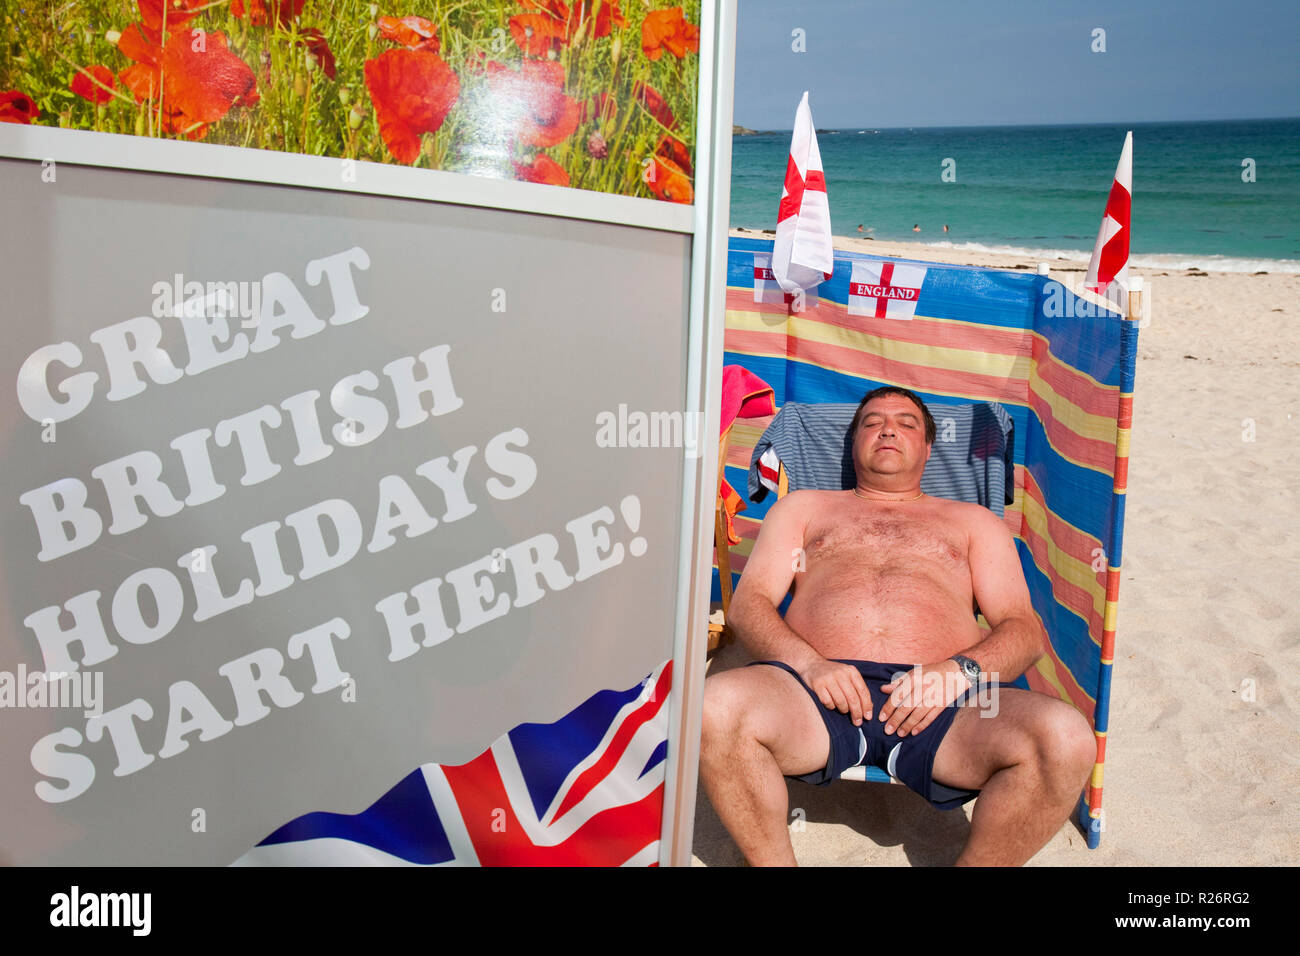 Les partisans de l'Angleterre de la coupe du monde à bronzer sur la plage à St Ives, Cornwall, UK. Banque D'Images